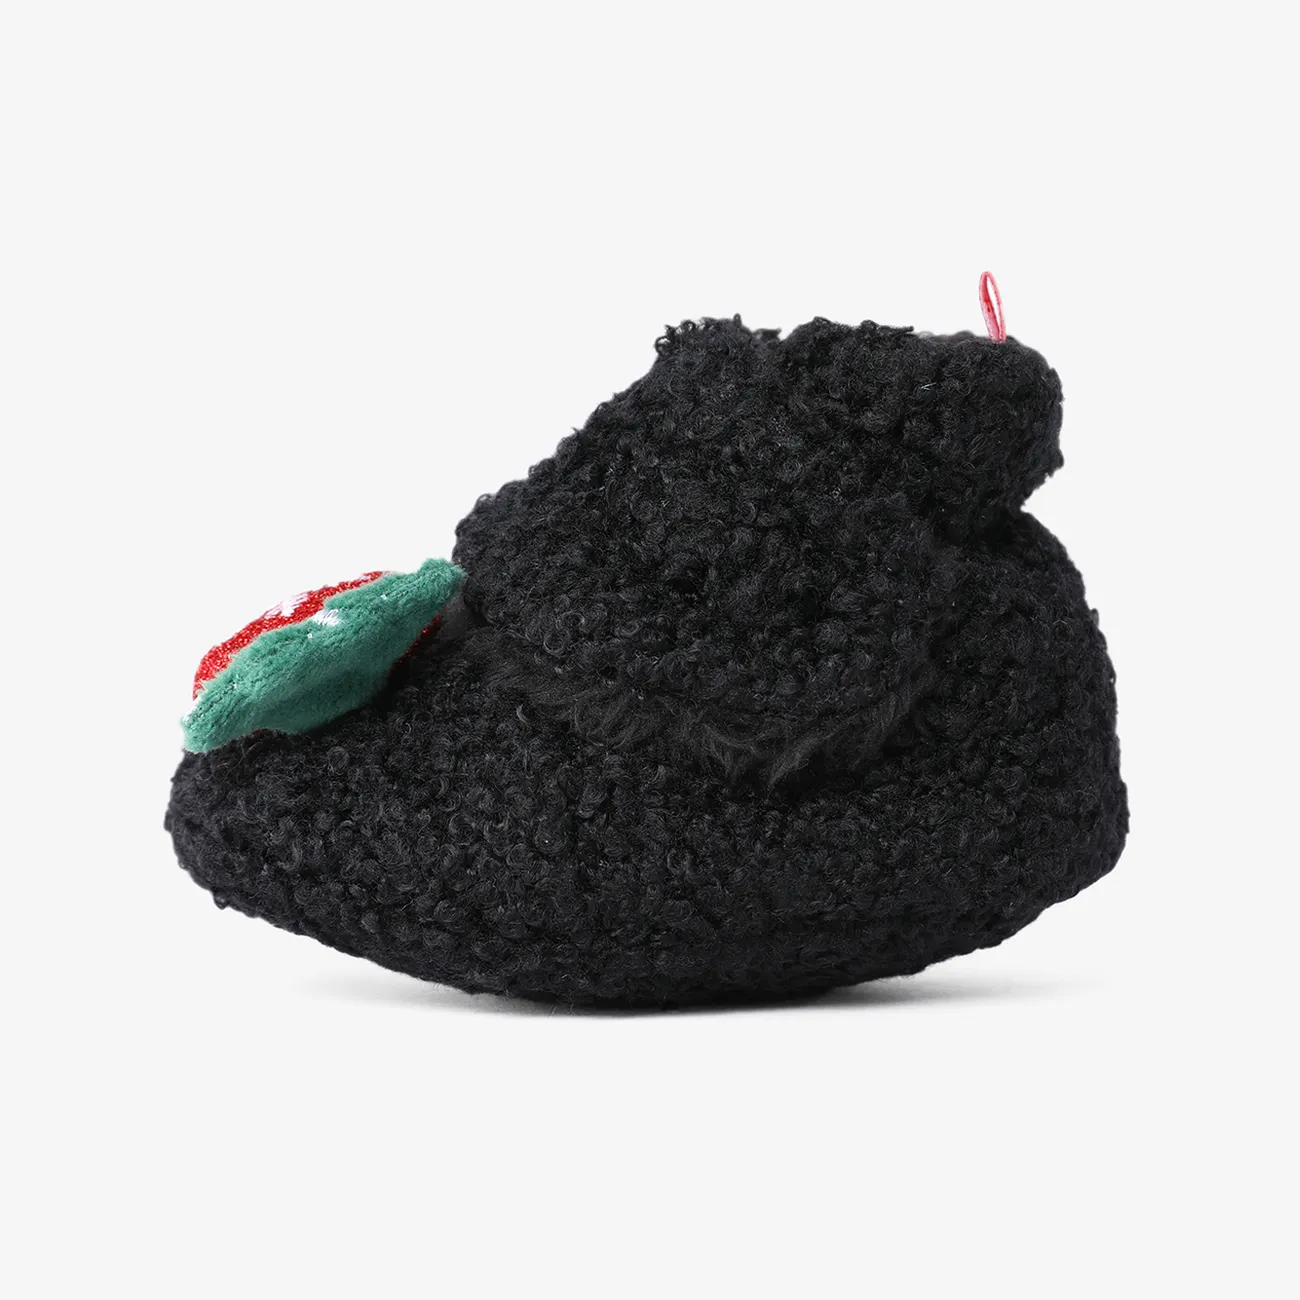  عيد الميلاد الطفل والأطفال الصغار مهرجان موضوع ديكور أحذية Prewalker أسود big image 1